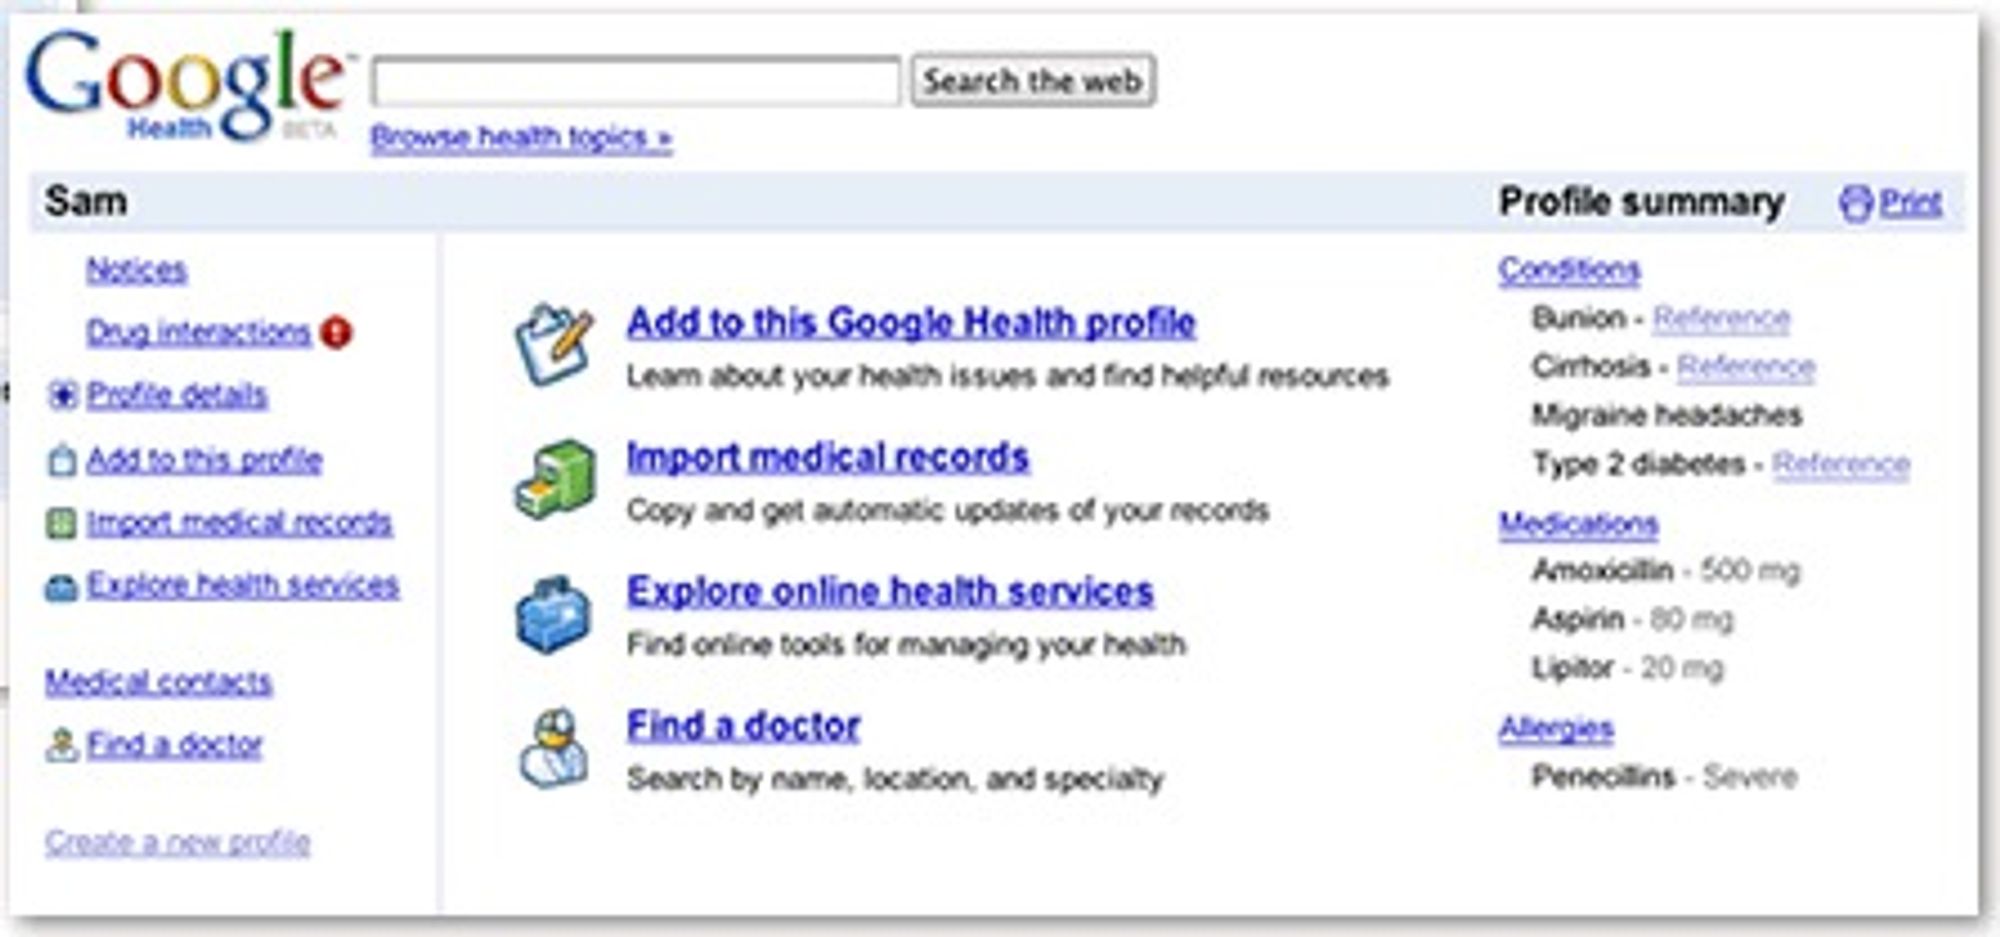 Åpningsbildet i Google Health kommer etter en pålogging av samme type som på e-posttjenesten Gmail.